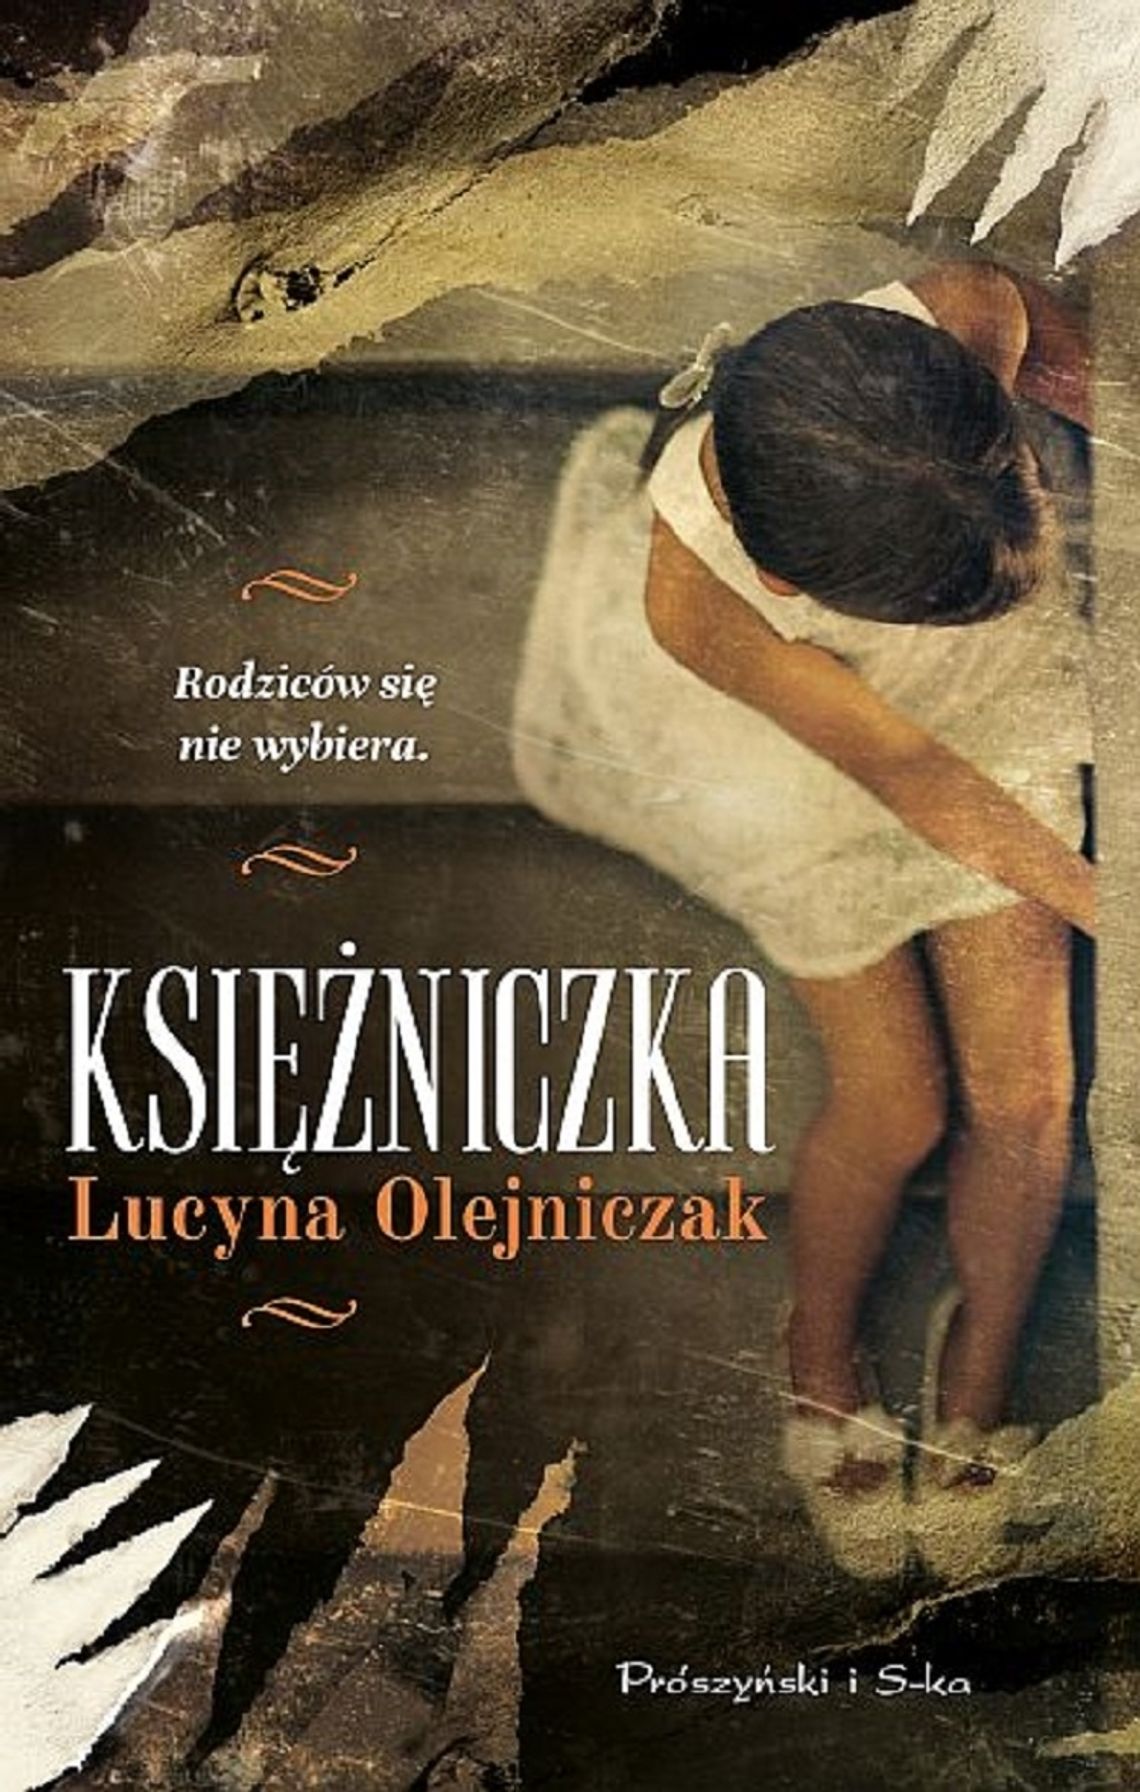 Lucyna Olejniczak "Księżniczka"; wyd. Prószyński i S-ka